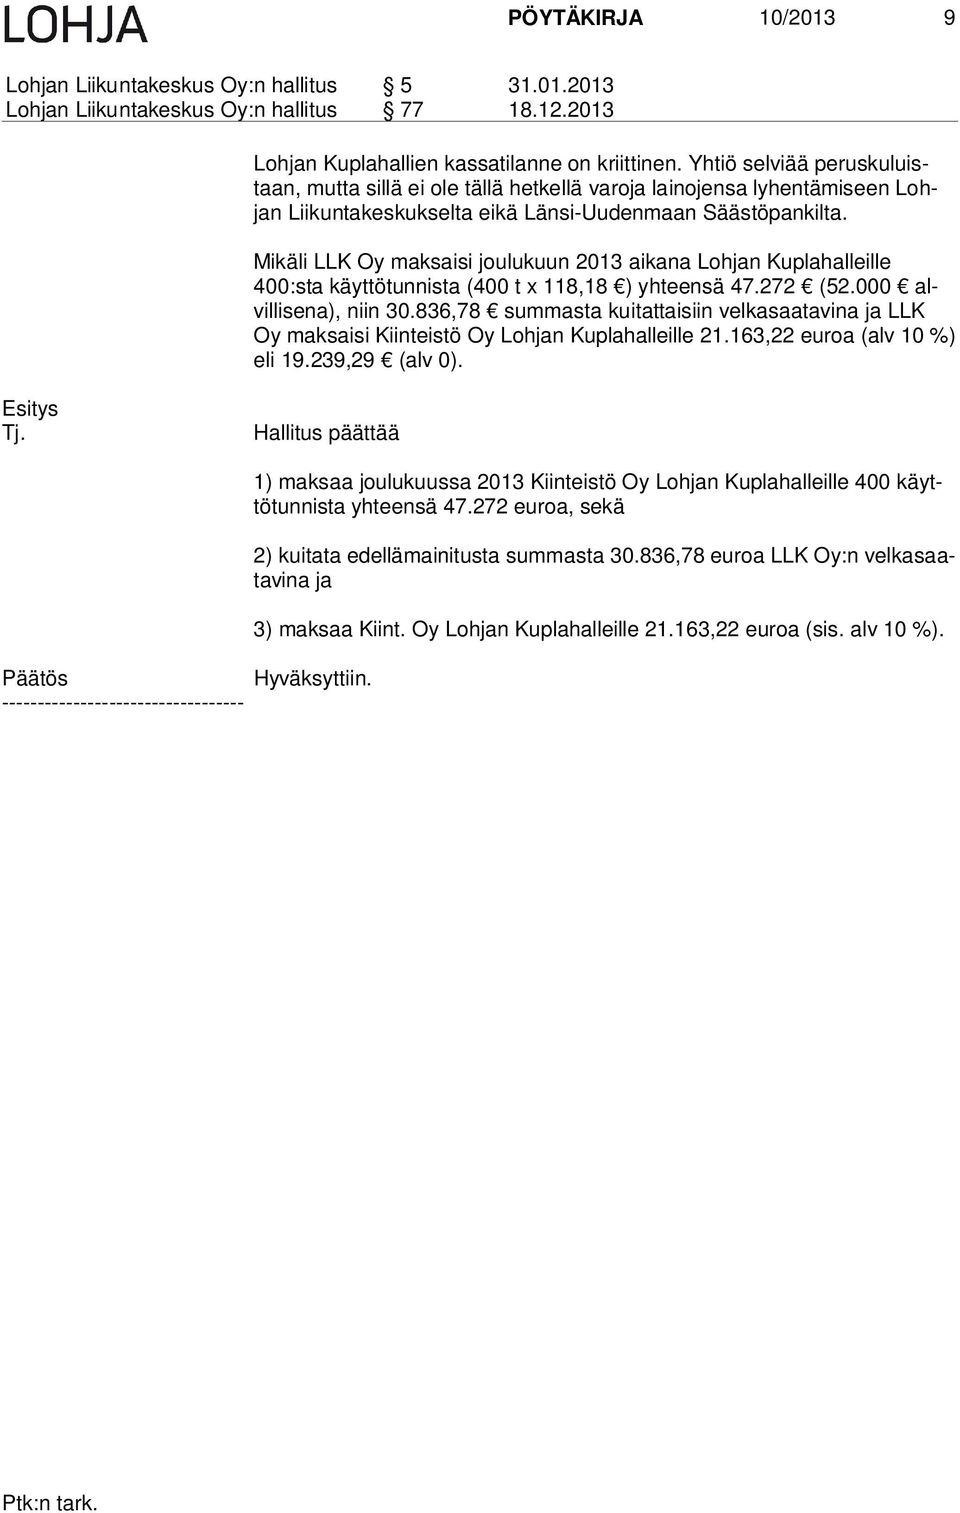 Mikäli LLK Oy maksaisi joulukuun 2013 aikana Lohjan Kuplahalleille 400:sta käyttötunnista (400 t x 118,18 ) yhteensä 47.272 (52.000 alvil li se na), niin 30.